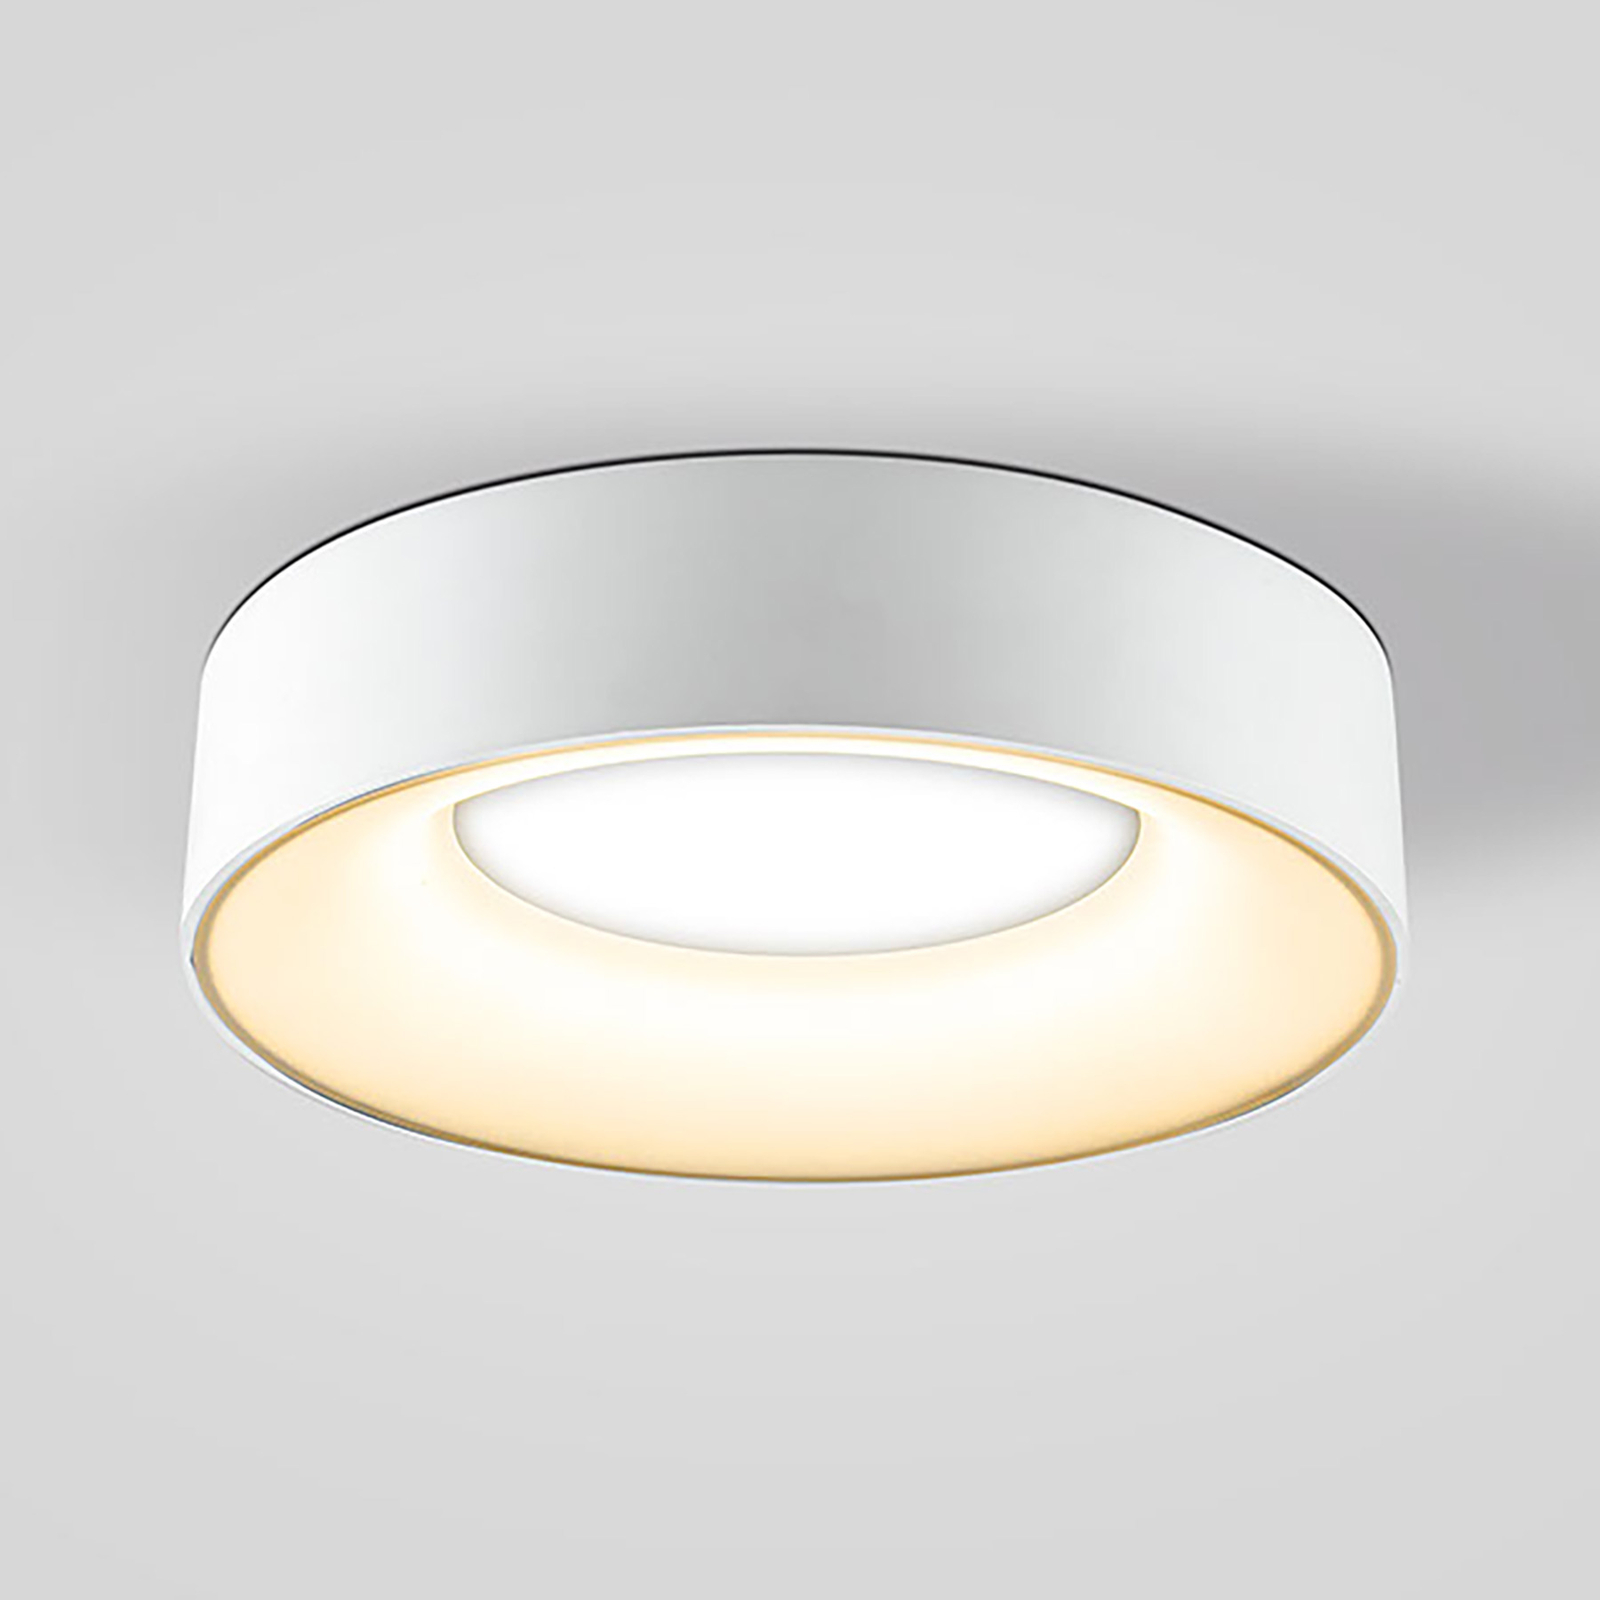 Sauro LED ceiling light, Ø 30 cm, white